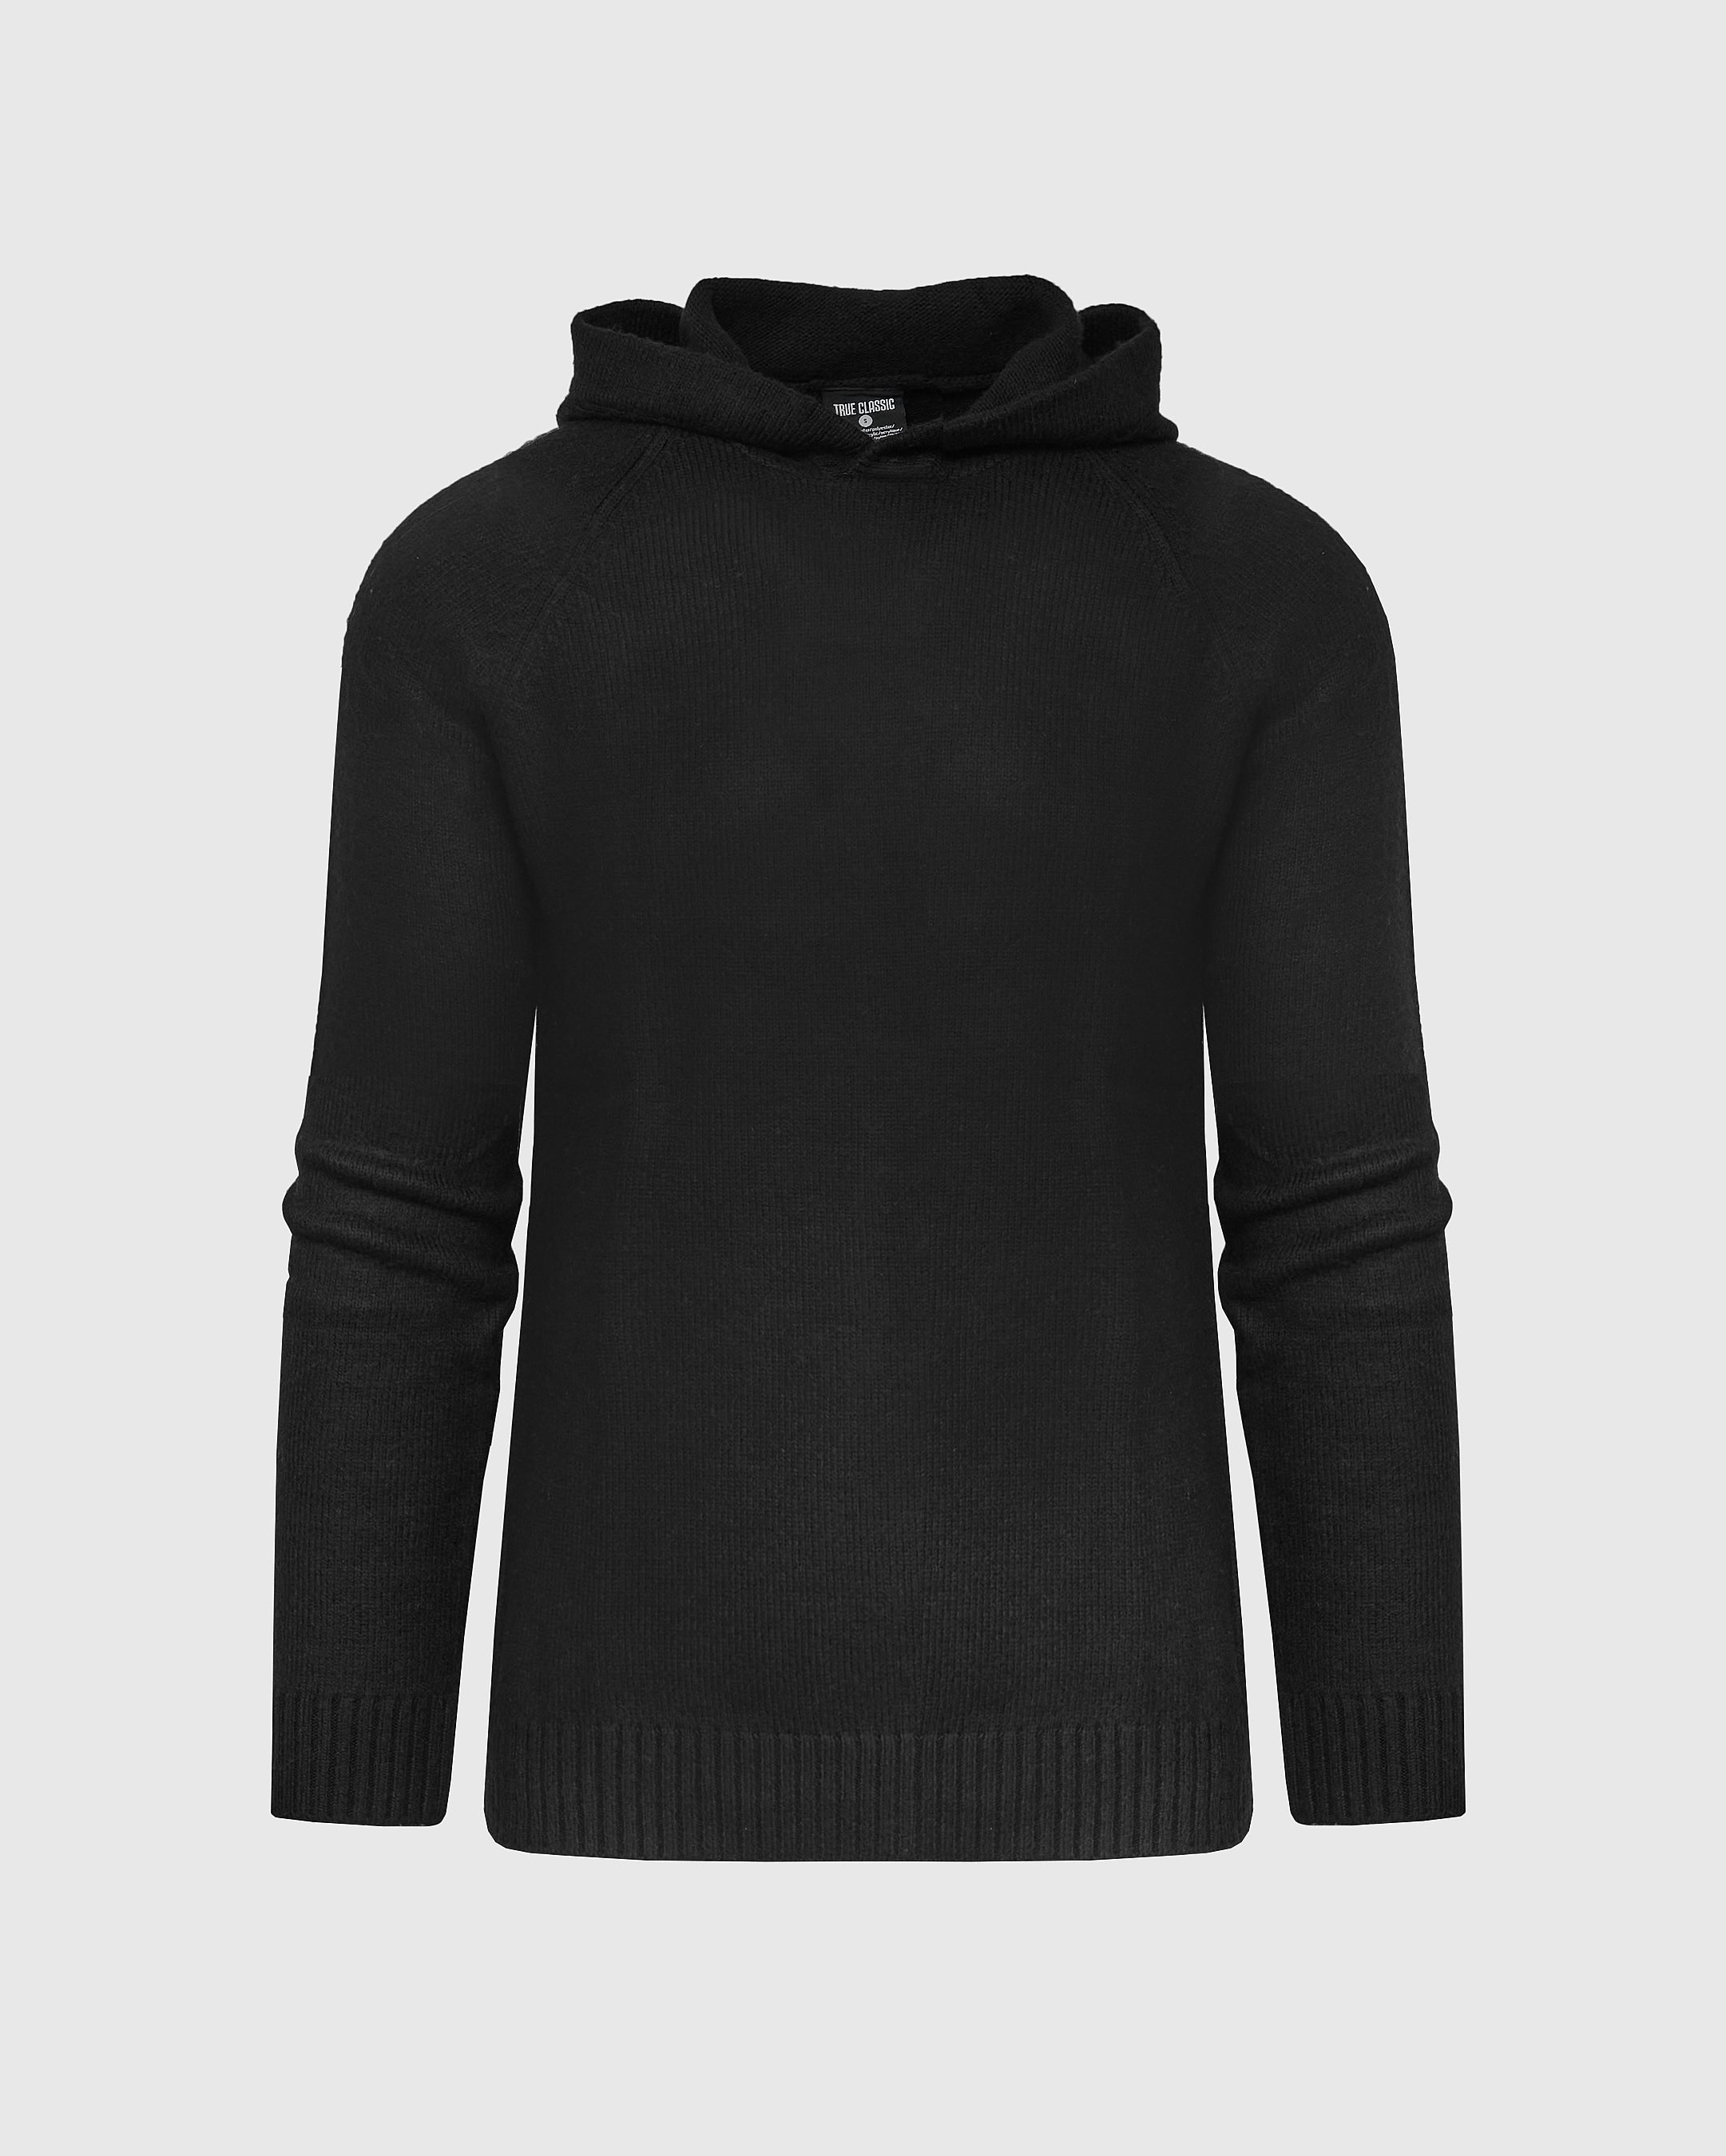 Black Sweater Hoodie | Black Sweater Hoodie | True Classic